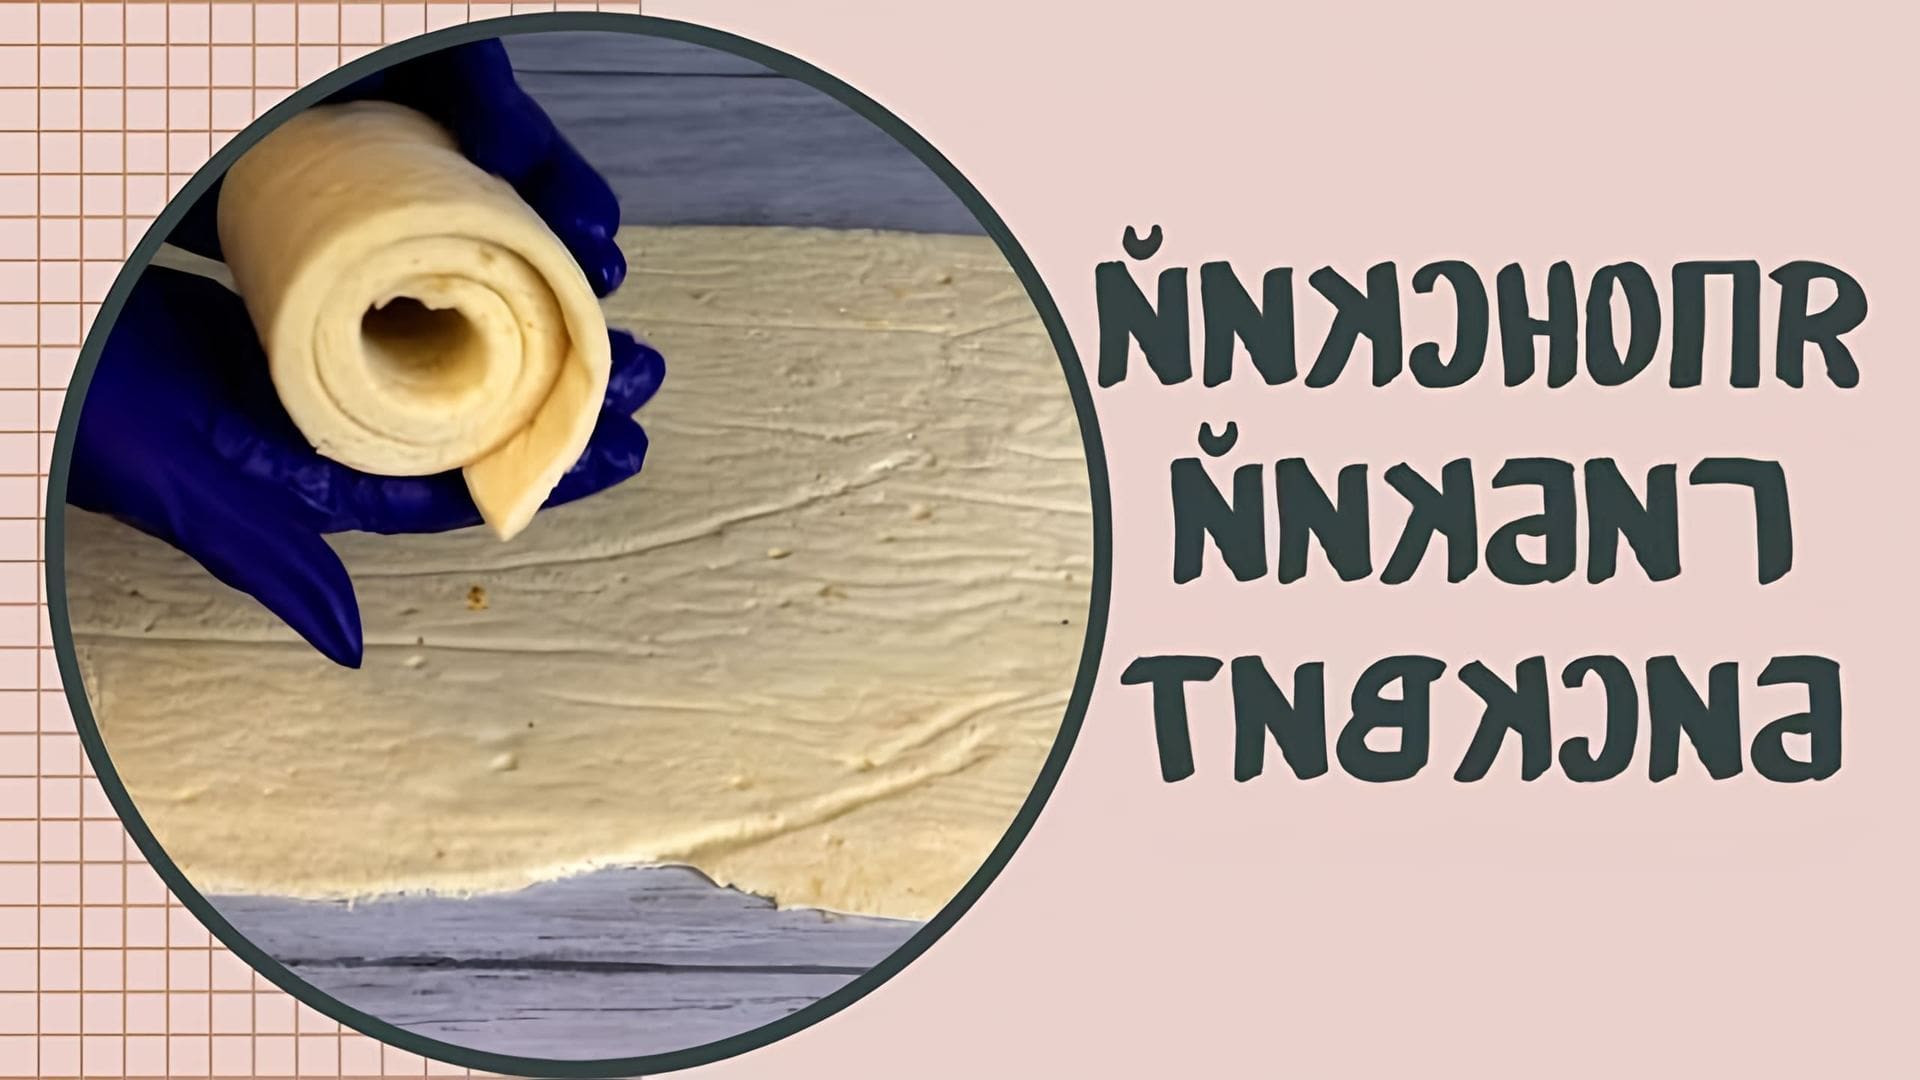 В этом видео показан рецепт японского гибкого бисквита, который используется для обтягивания торта